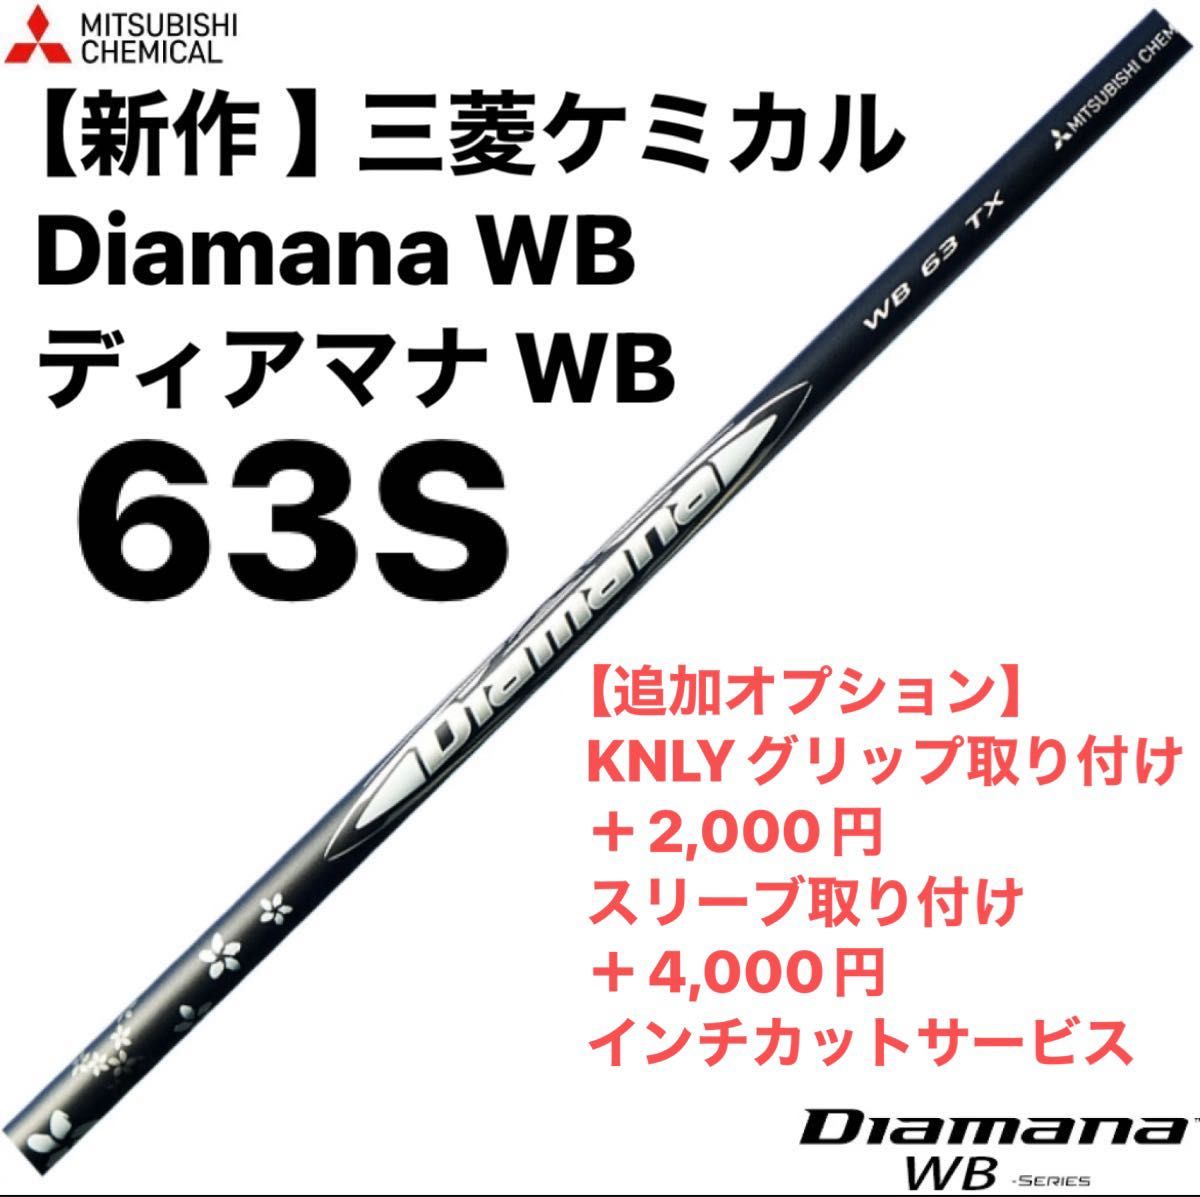 【新作 】三菱ケミカル Diamana WB ディアマナ WB  63S シャフト単品